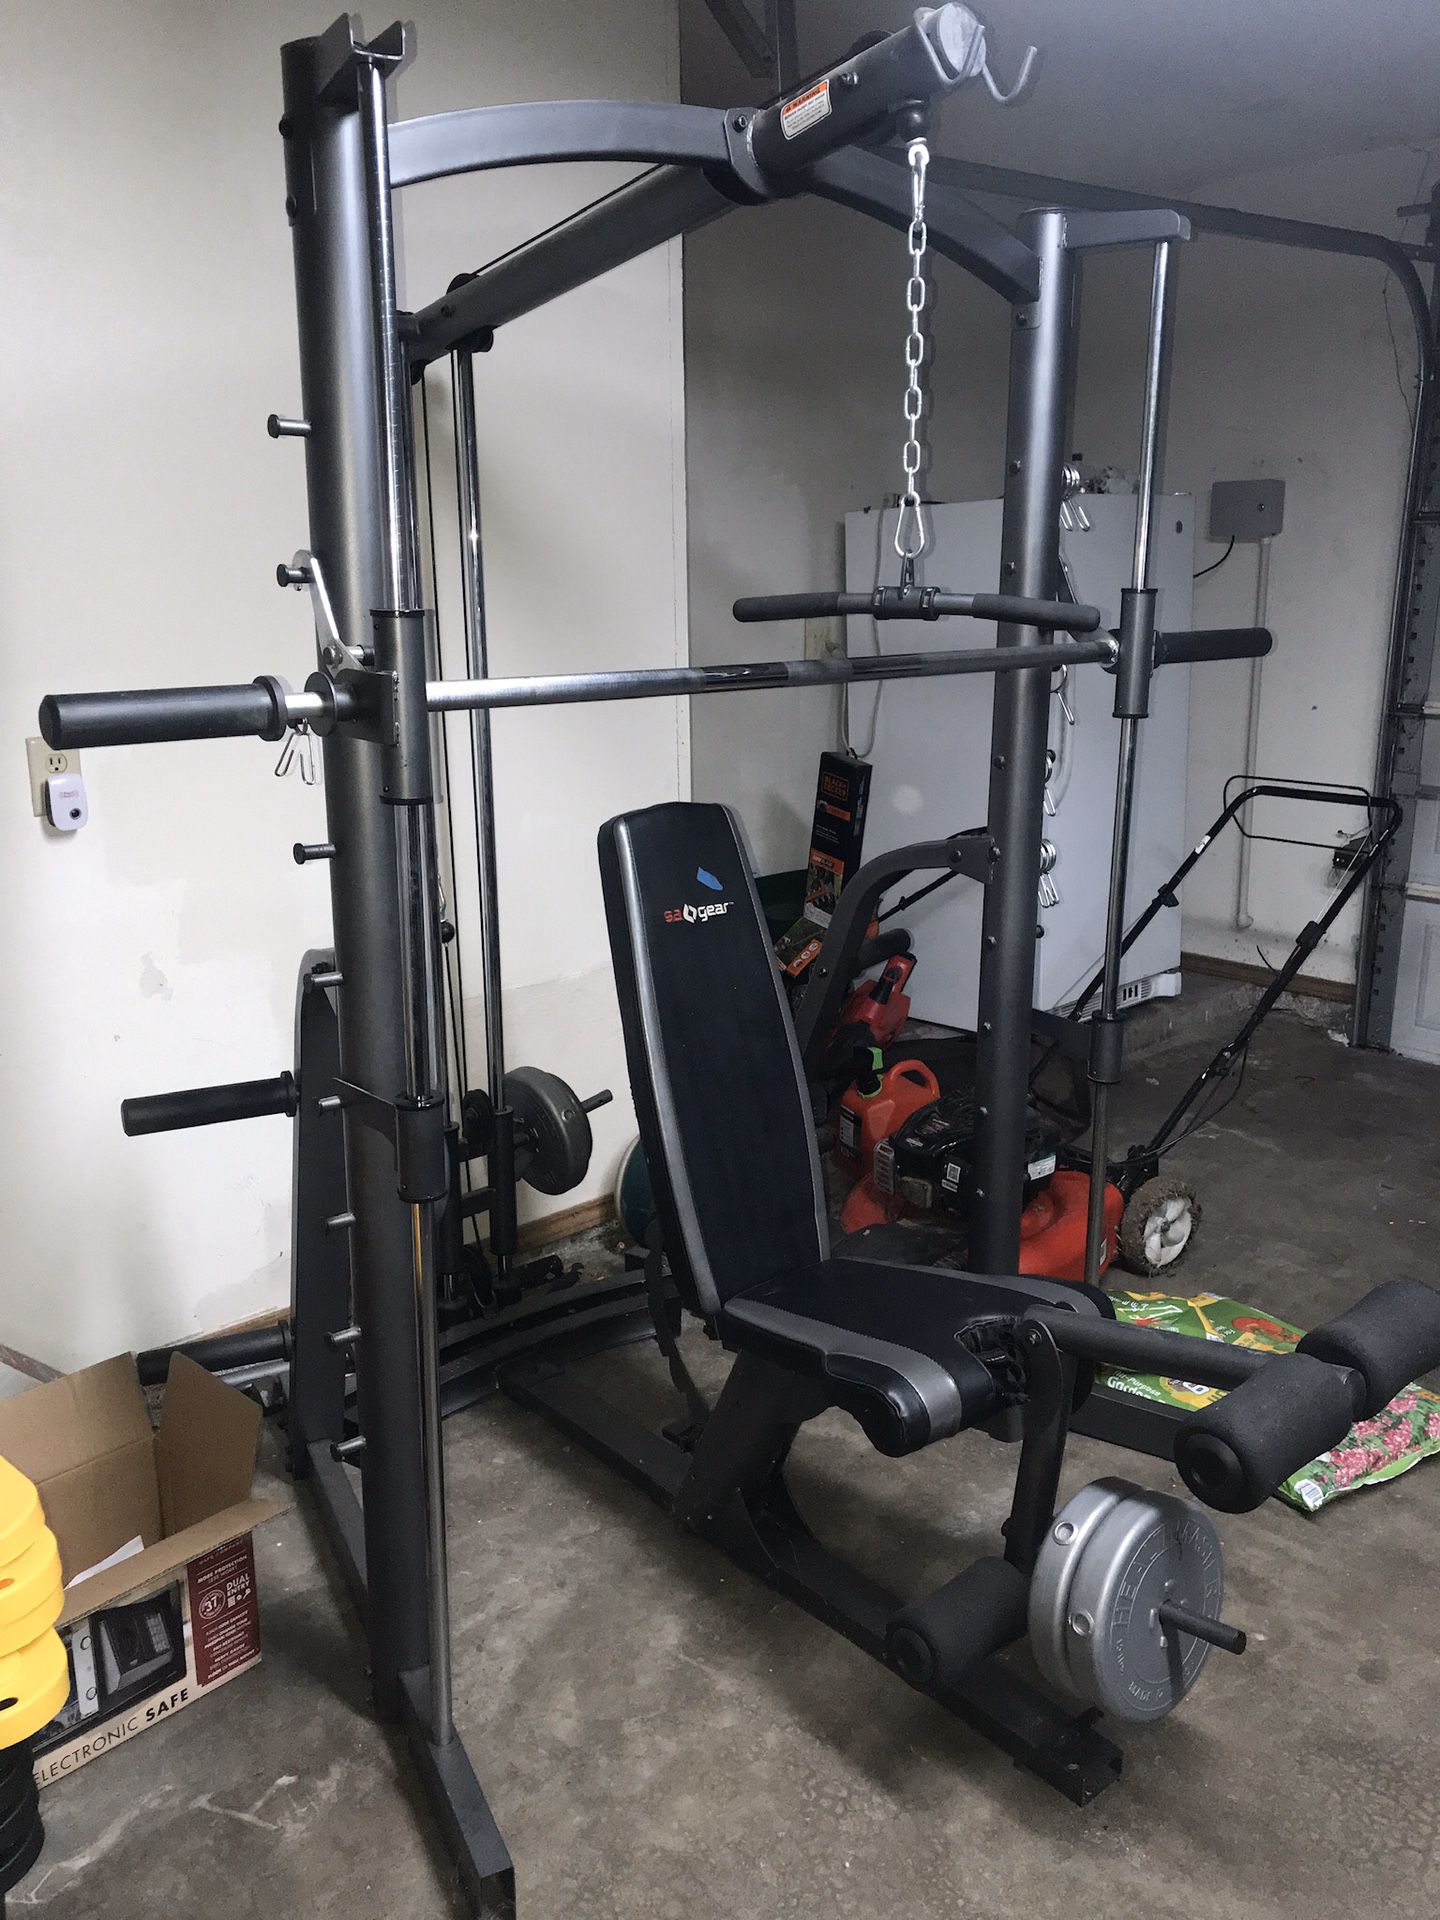 SA Home Gym with weights